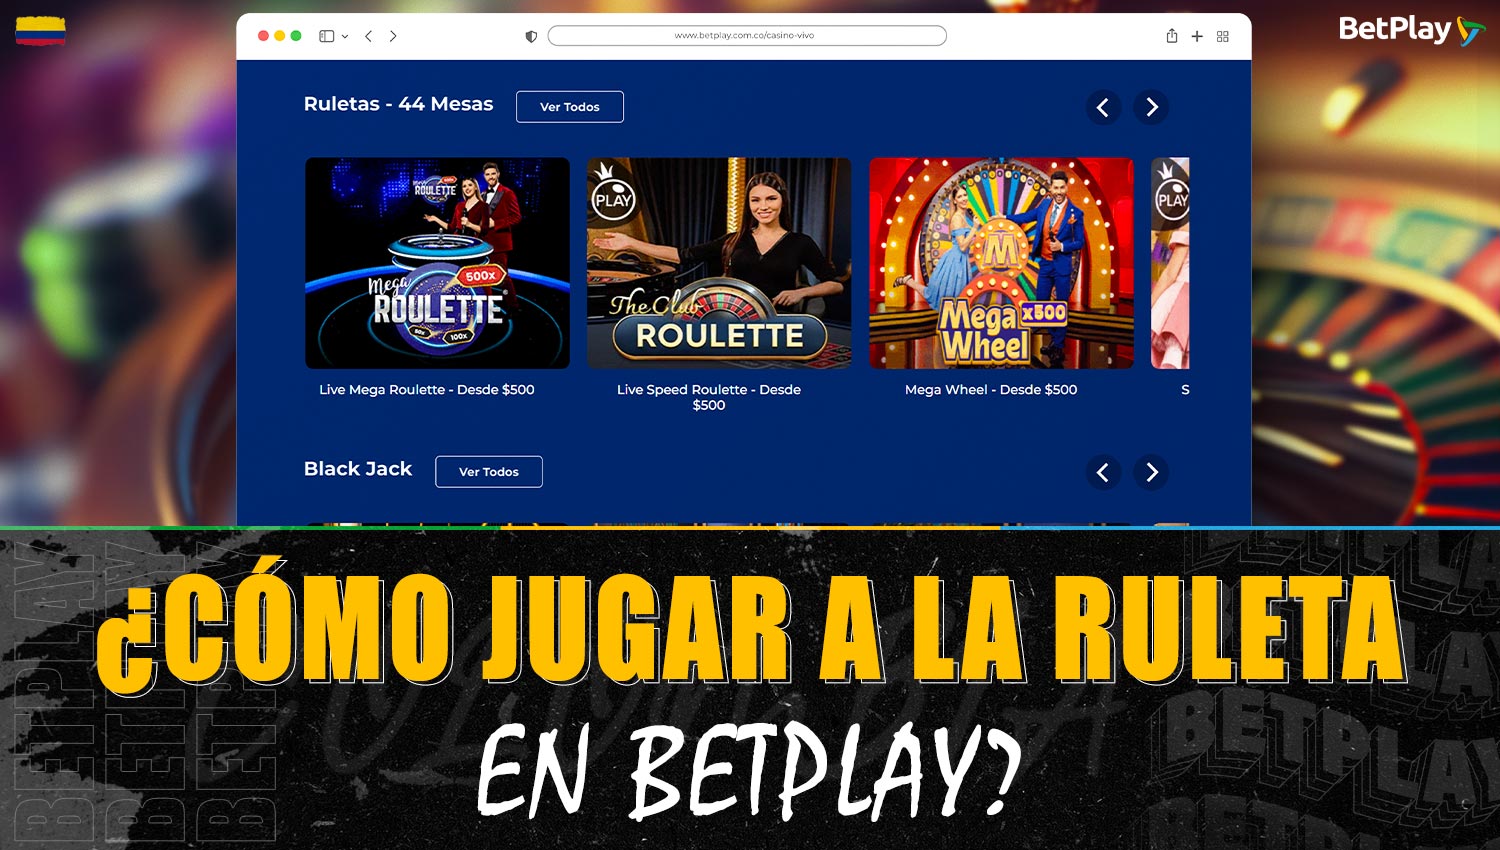 Guía de juego de la "Ruleta" en la plataforma Betplay Colombia